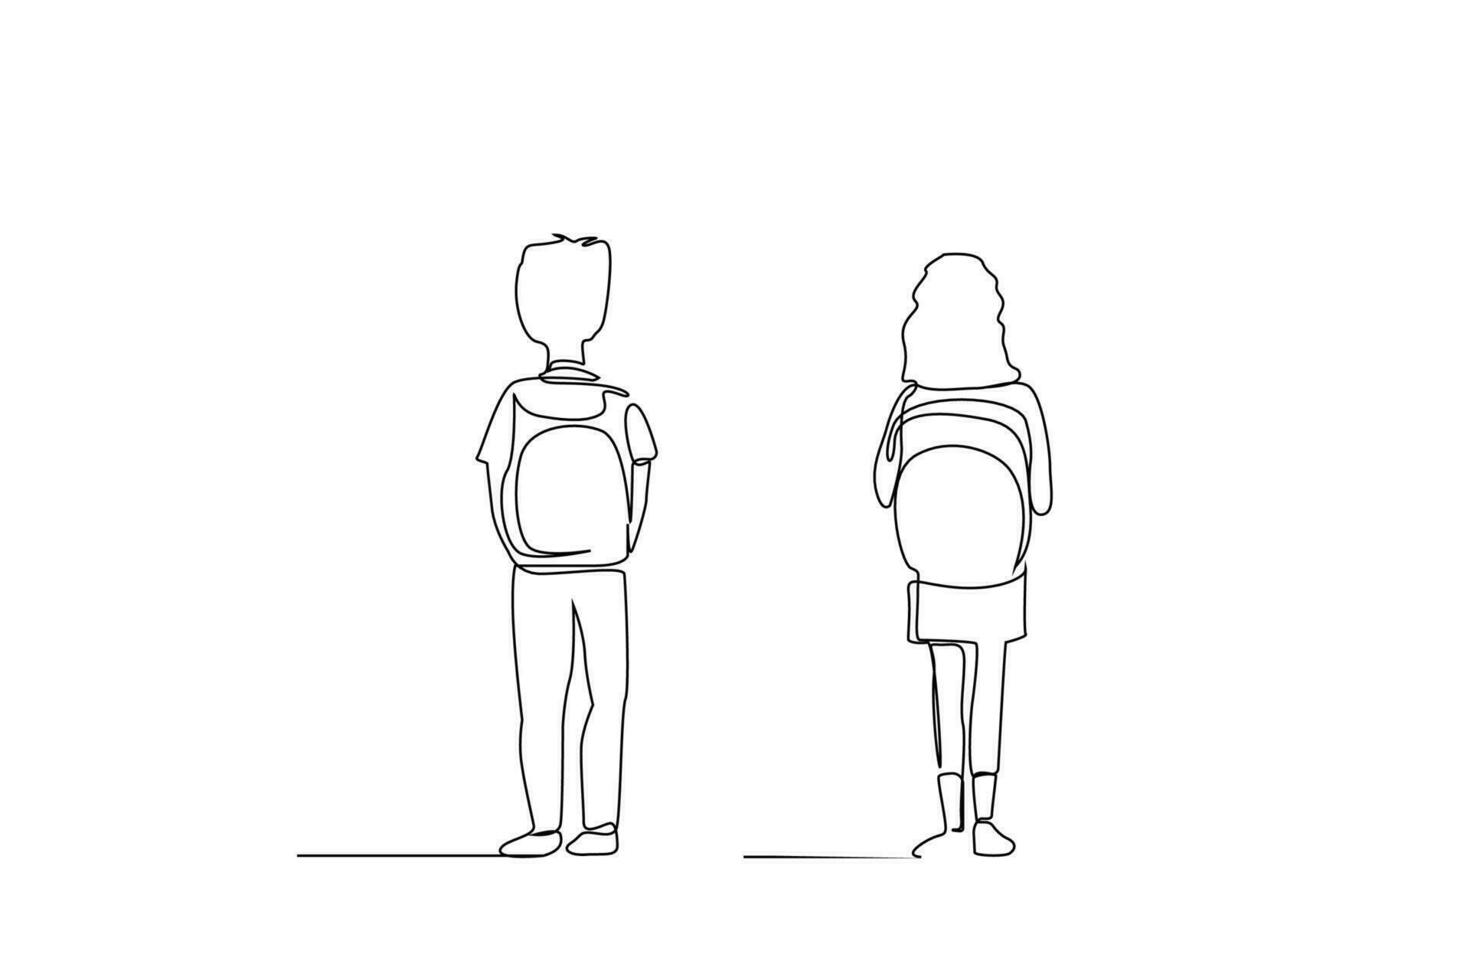 jong leerling meisje met rugzak en jongen vol lichaam lengte terug achterzijde achter lijn kunst ontwerp vector